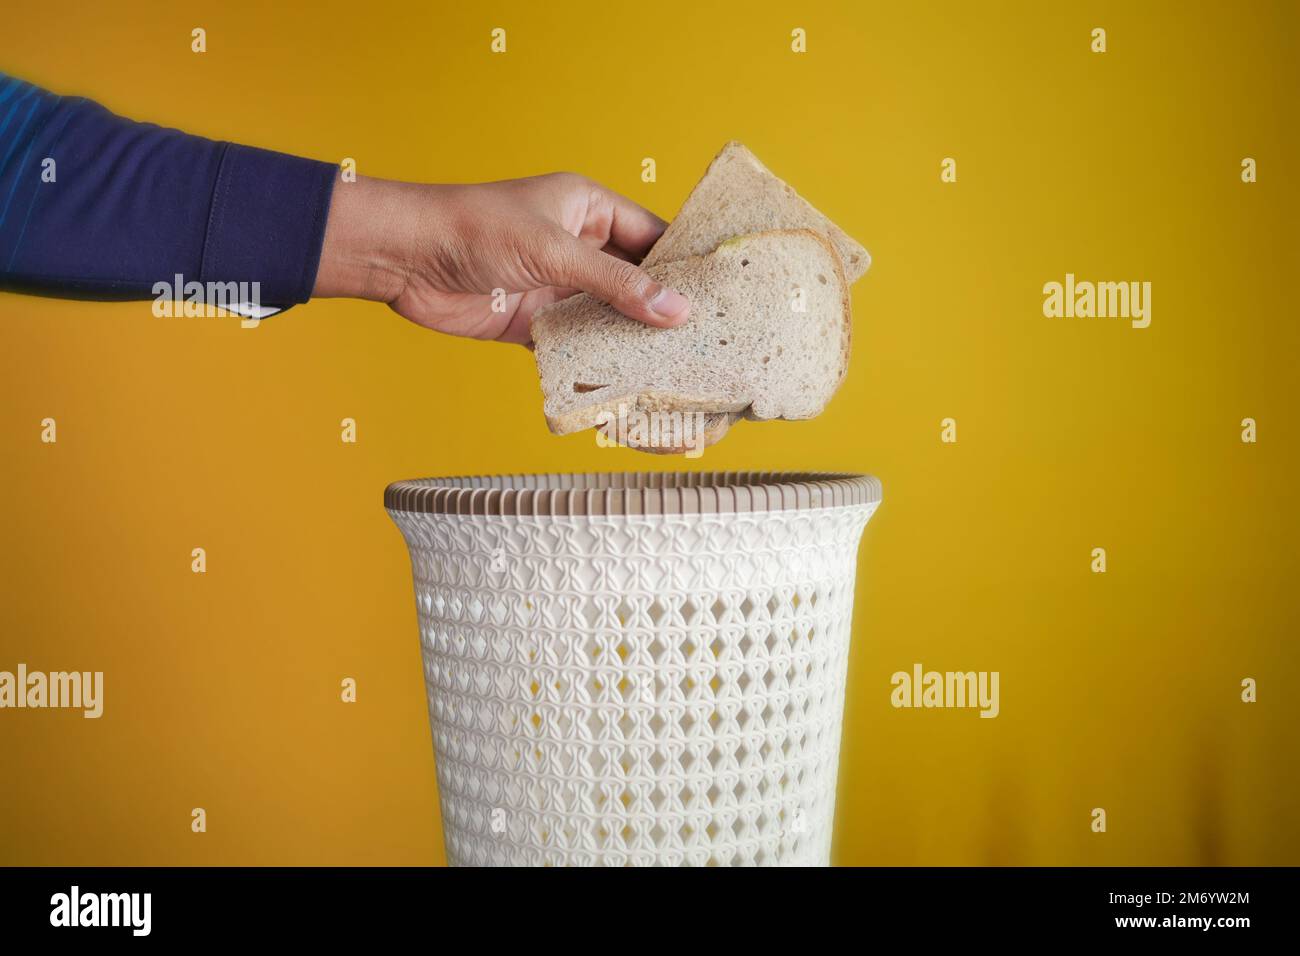 jeter des pains dans une poubelle Banque D'Images